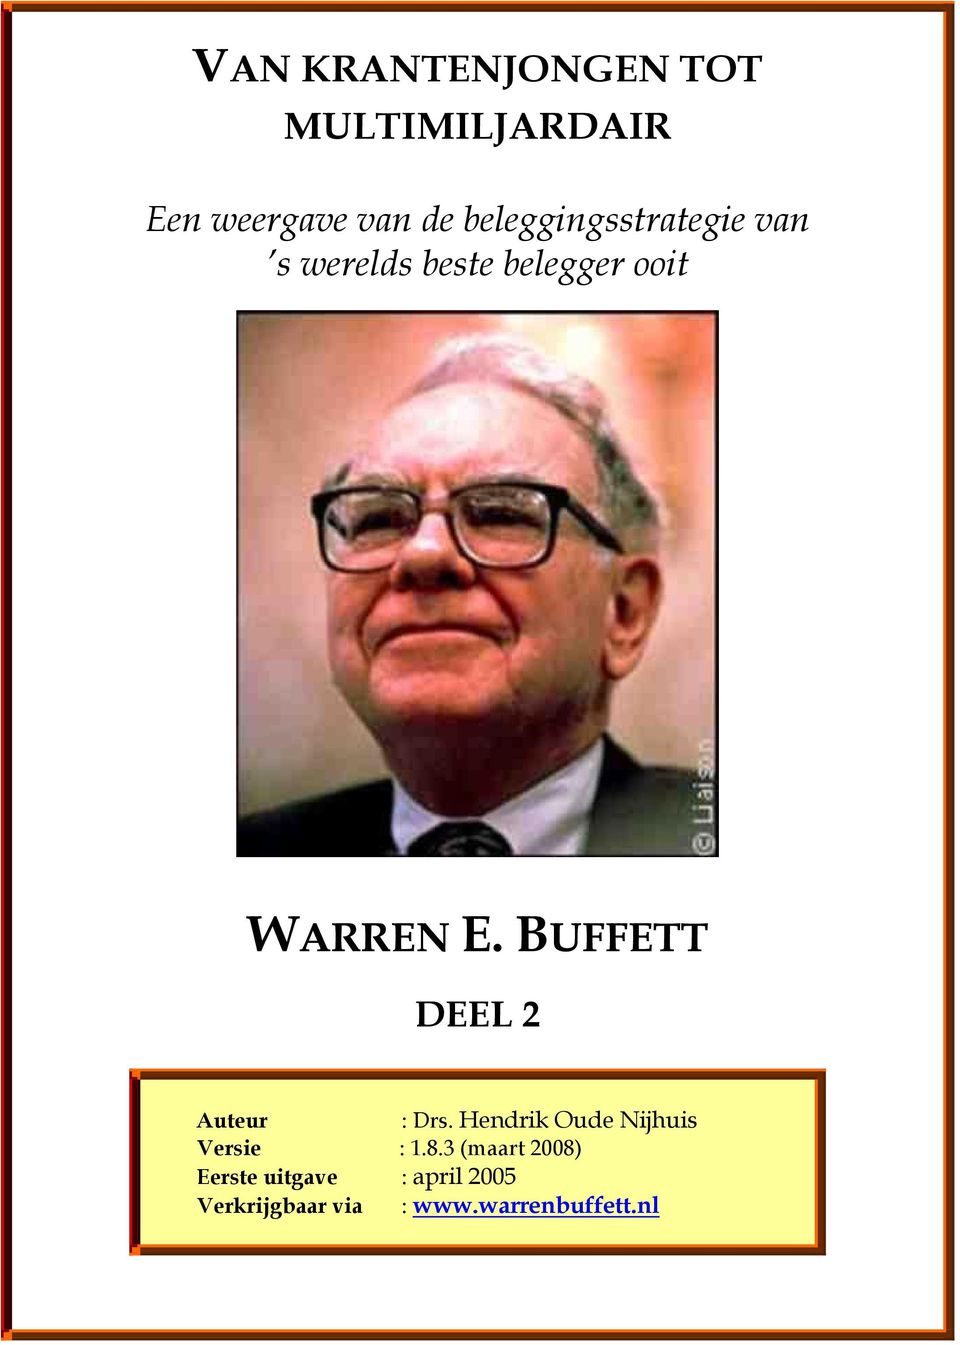 BUFFETT DEEL 2 Auteur : Drs. Hendrik Oude Nijhuis Versie : 1.8.